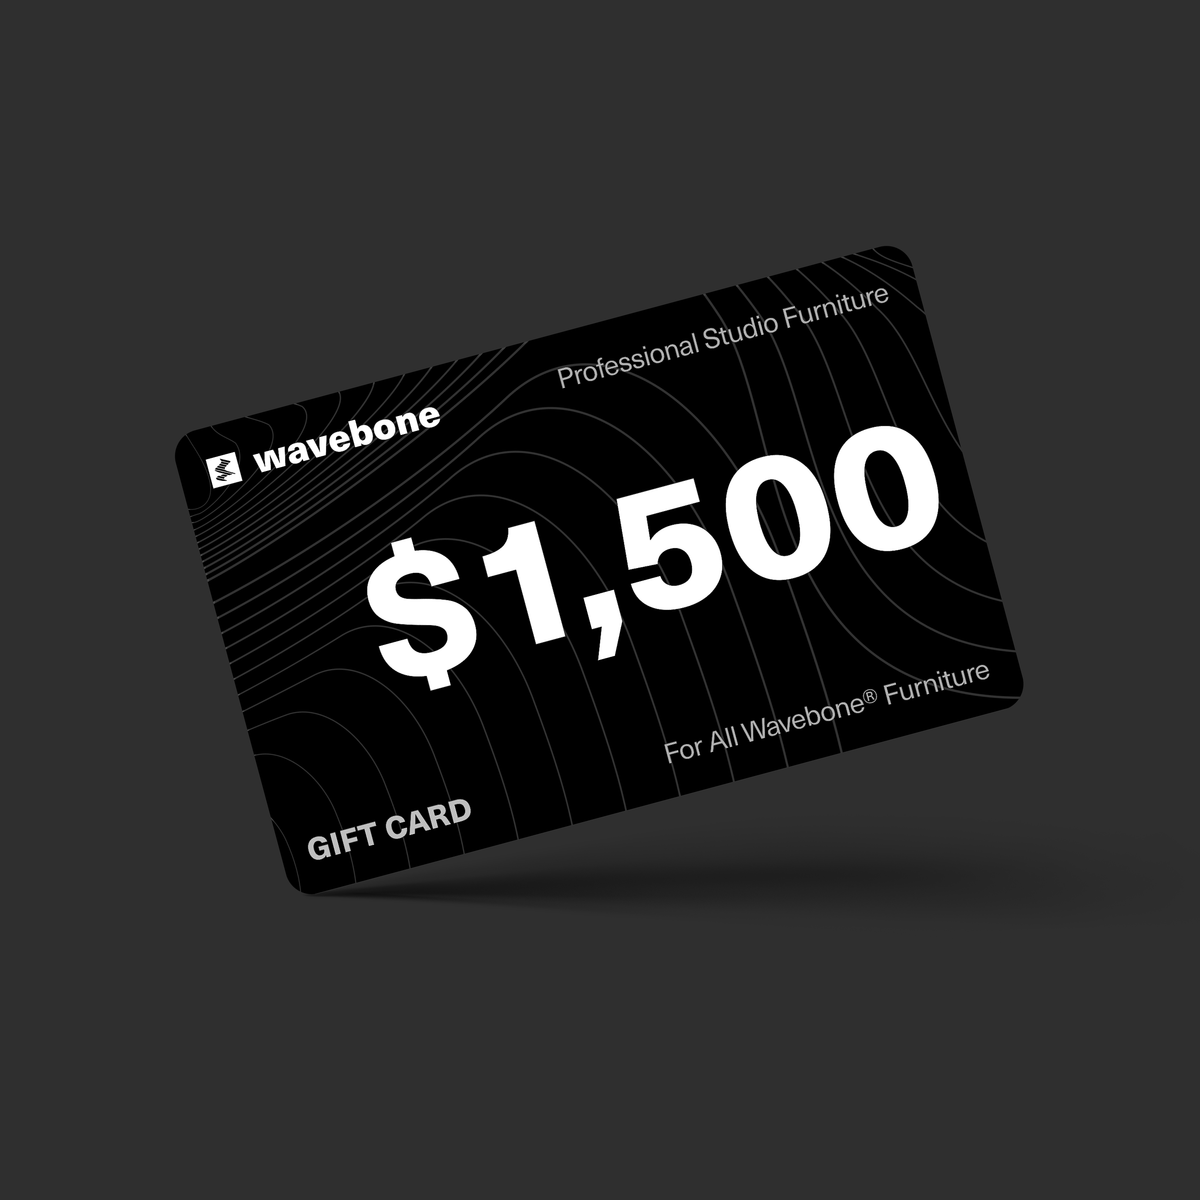 $ 1,500 | WAVEBONE GIFT CARD